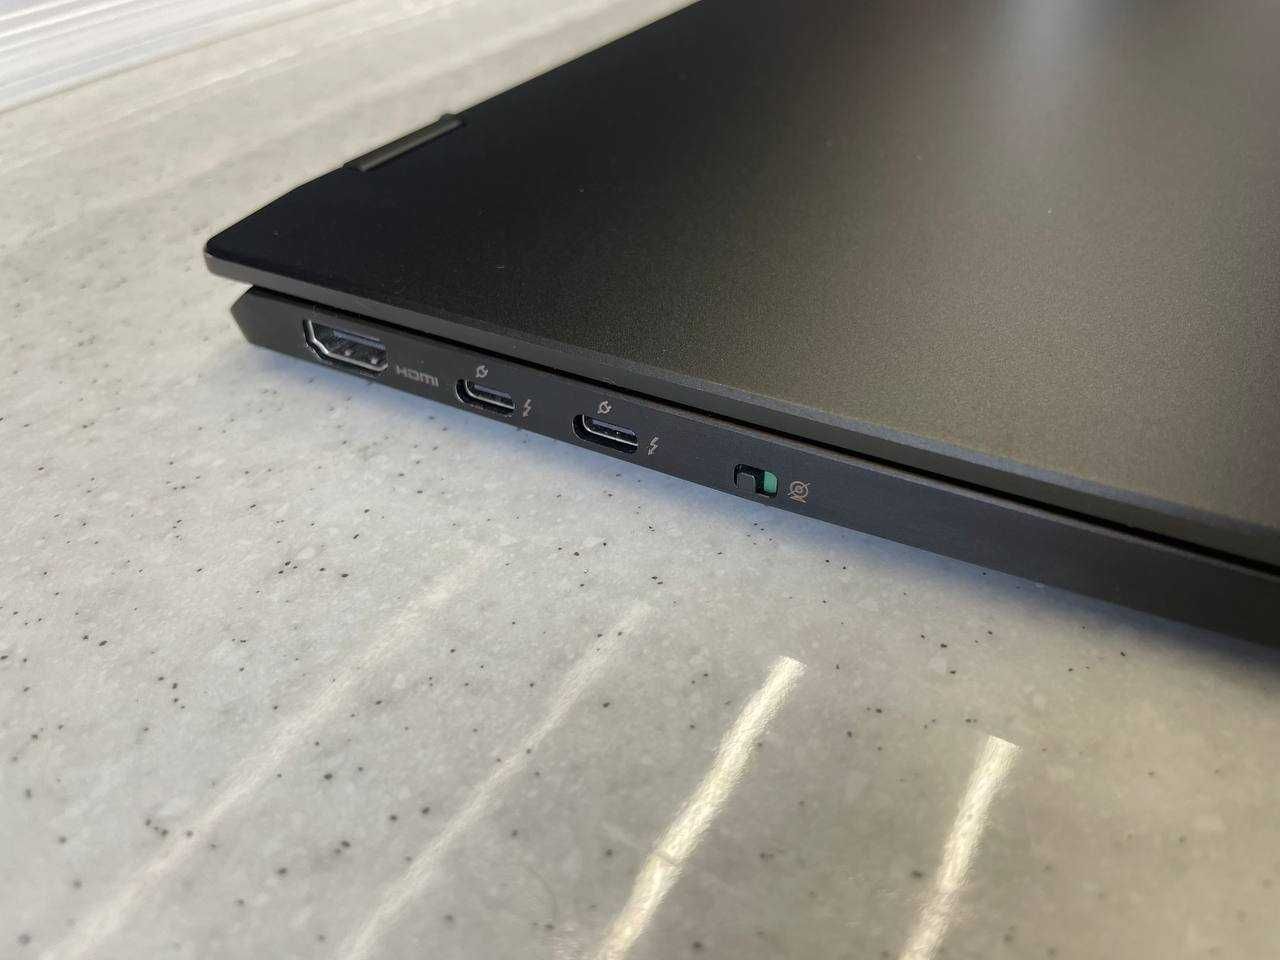 Премиум ноутбук MSI E16 flip